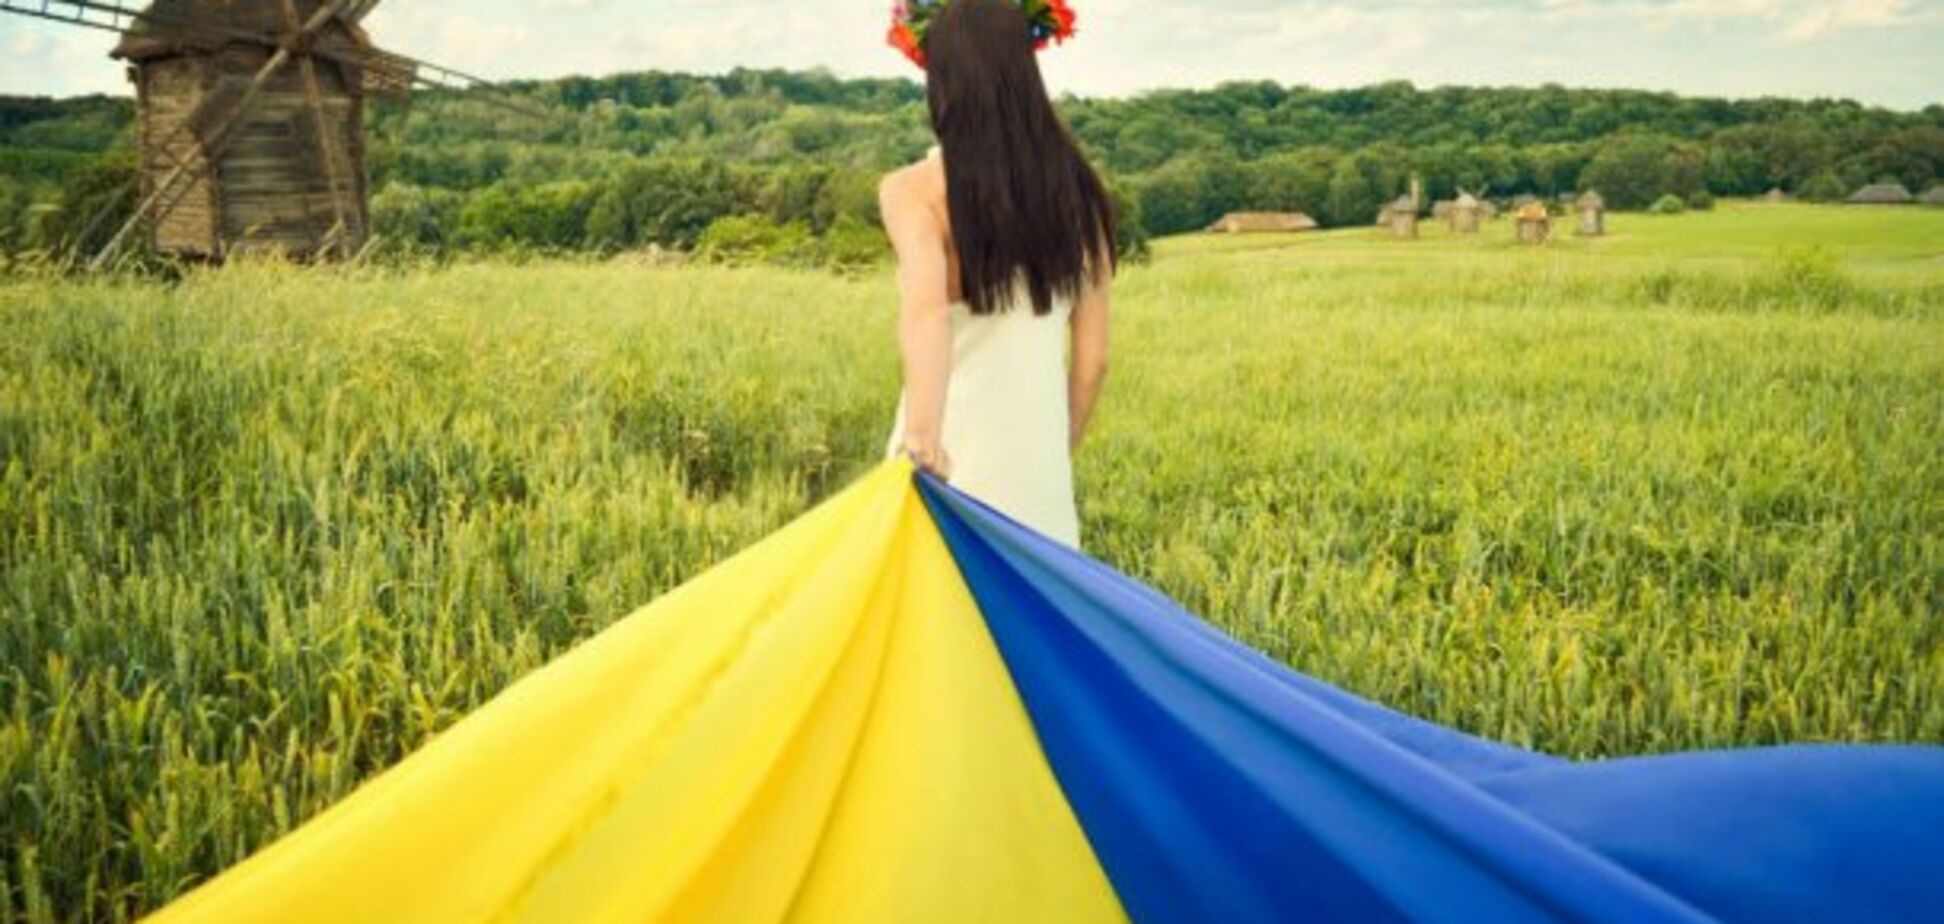 Девушка и рог изобилия: в сети нашли предсказание для Украины 400-летней давности